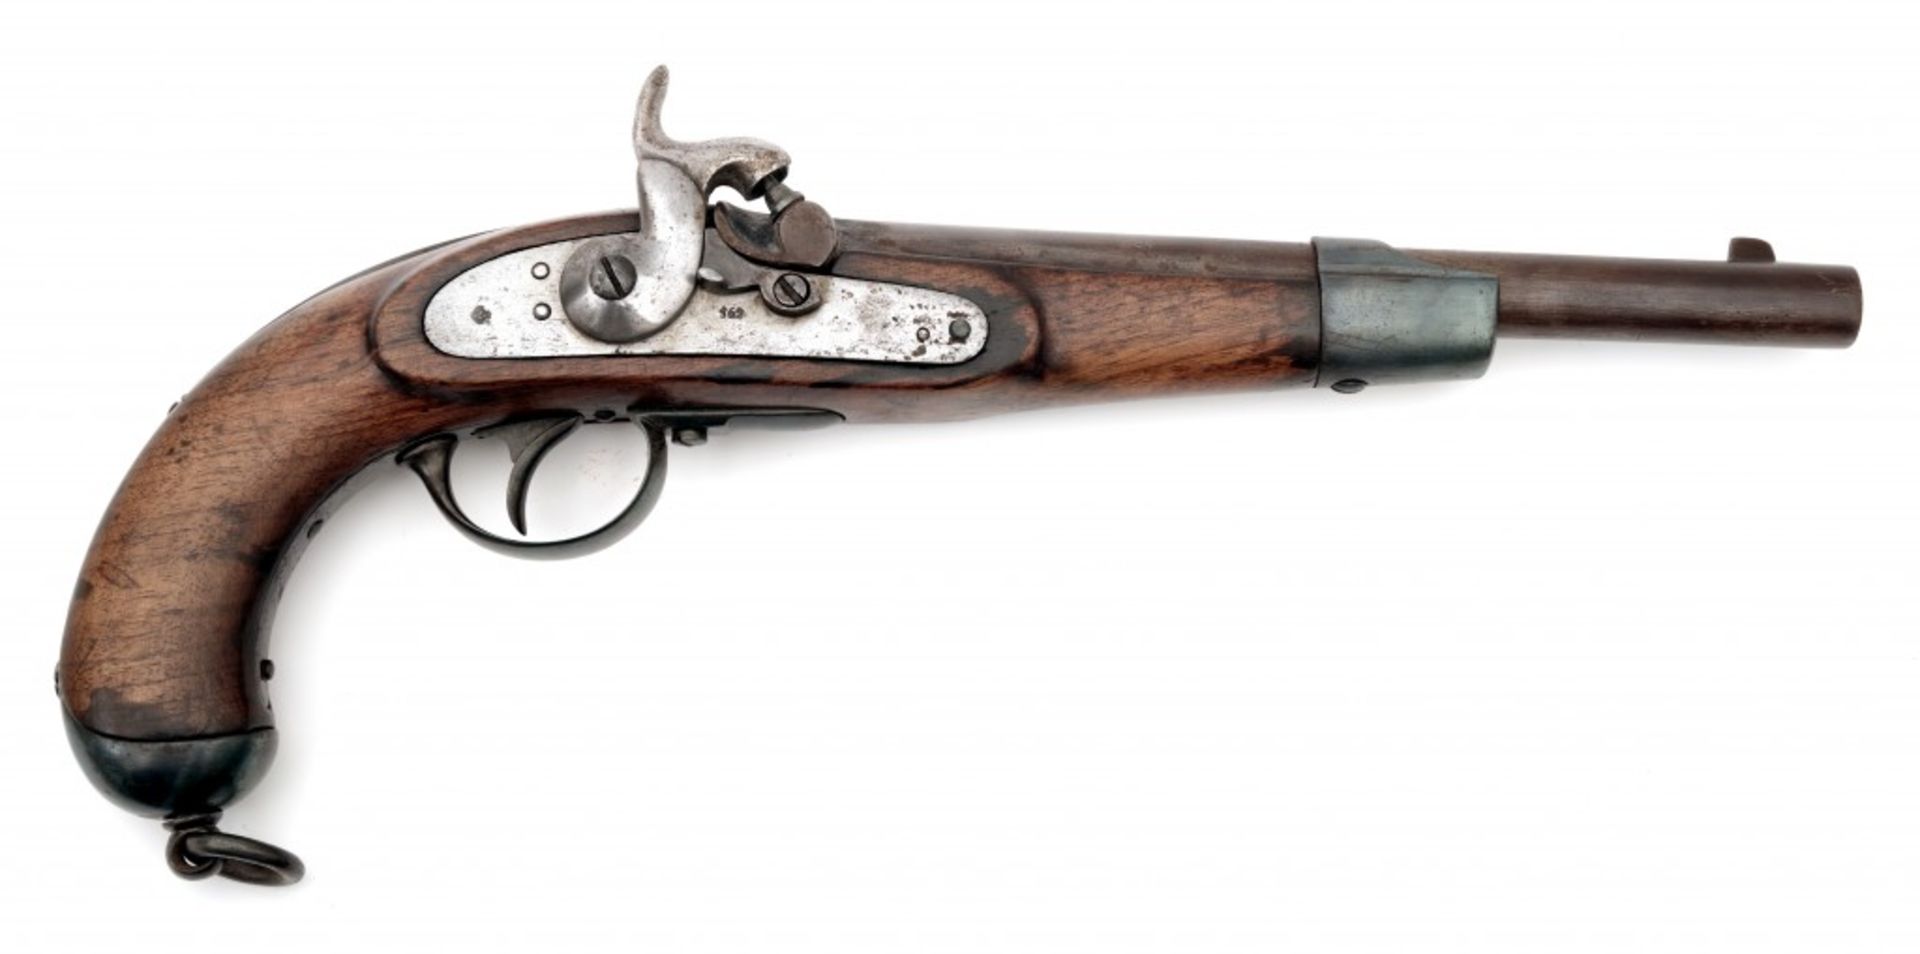 A 1862 Pattern Lorenz Cavalry Pistol